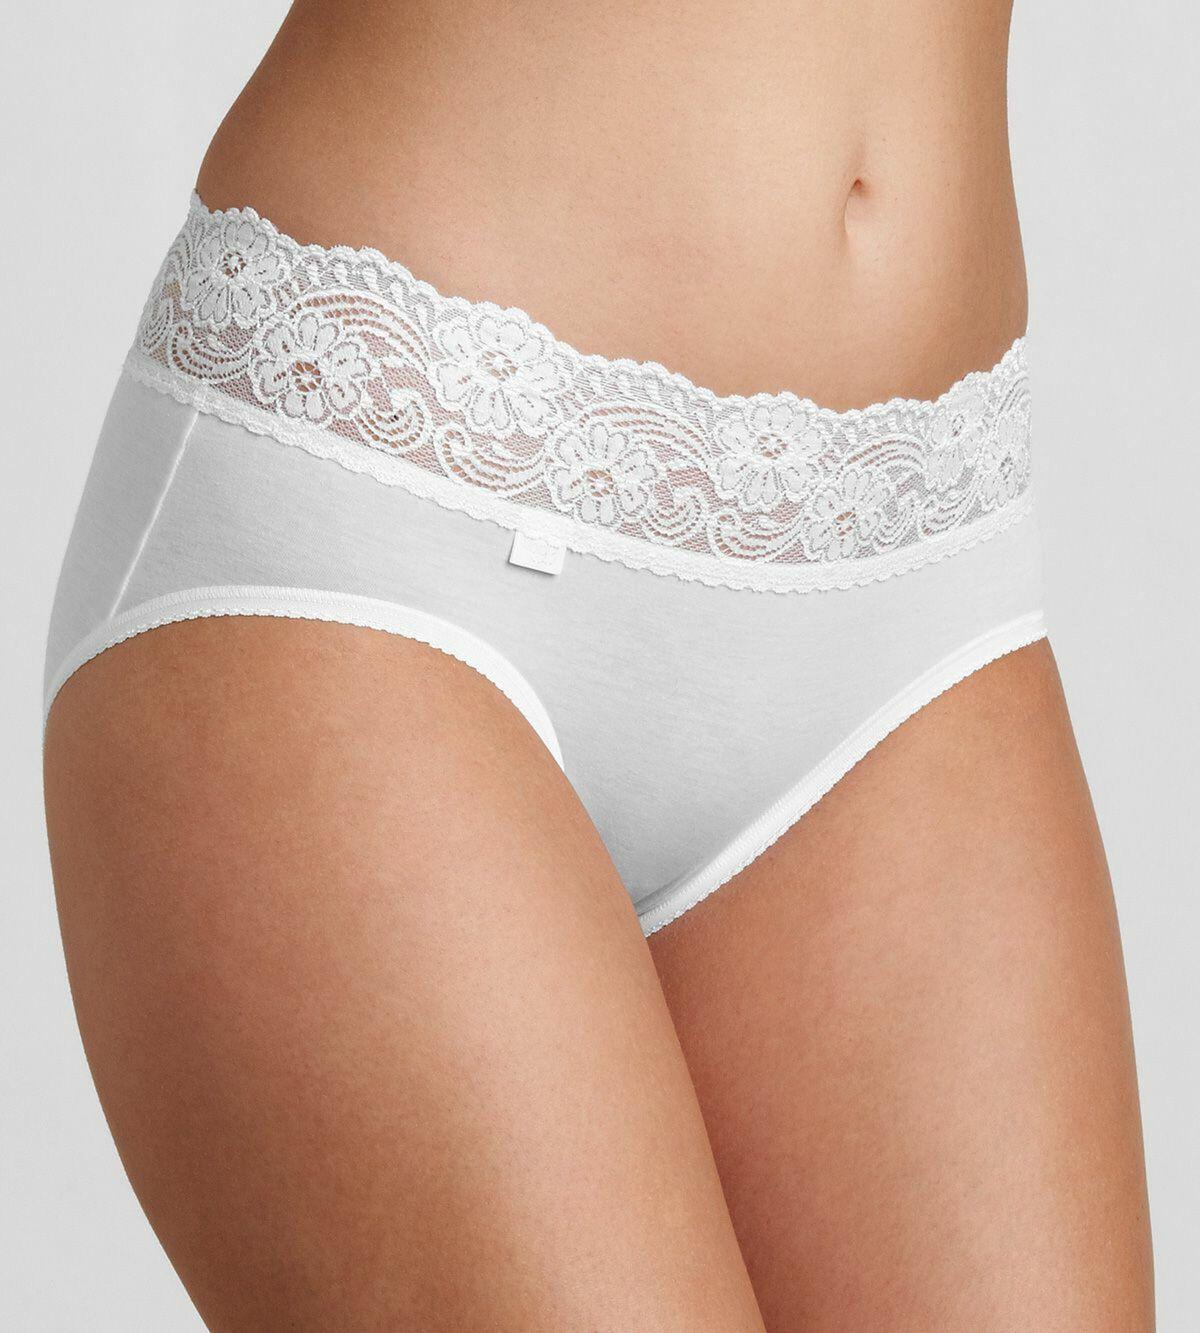 Sloggi Romance Midi Panty Brief Knickers Size 10 In White 10031896 Underwear